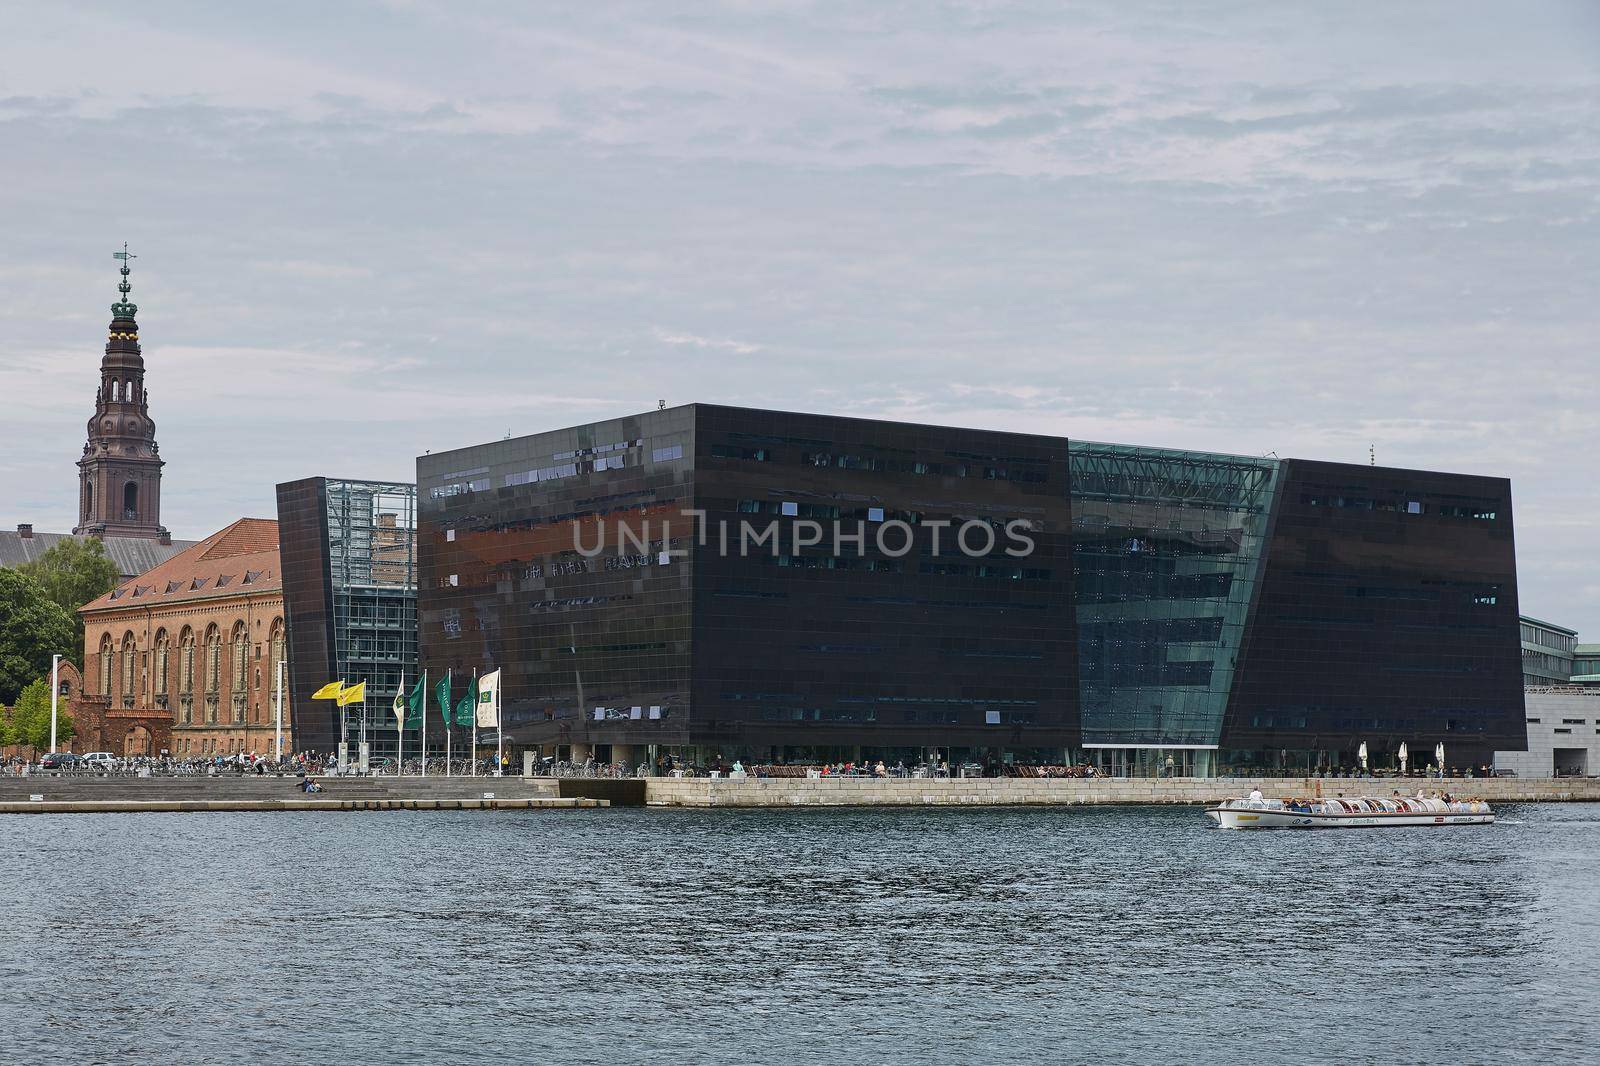 COPENHAGEN, DENMARK - JUNE 28, 2017: The Black Diamond. The Copenhagen Royal Library is the national library of Denmark in Copenhagen.